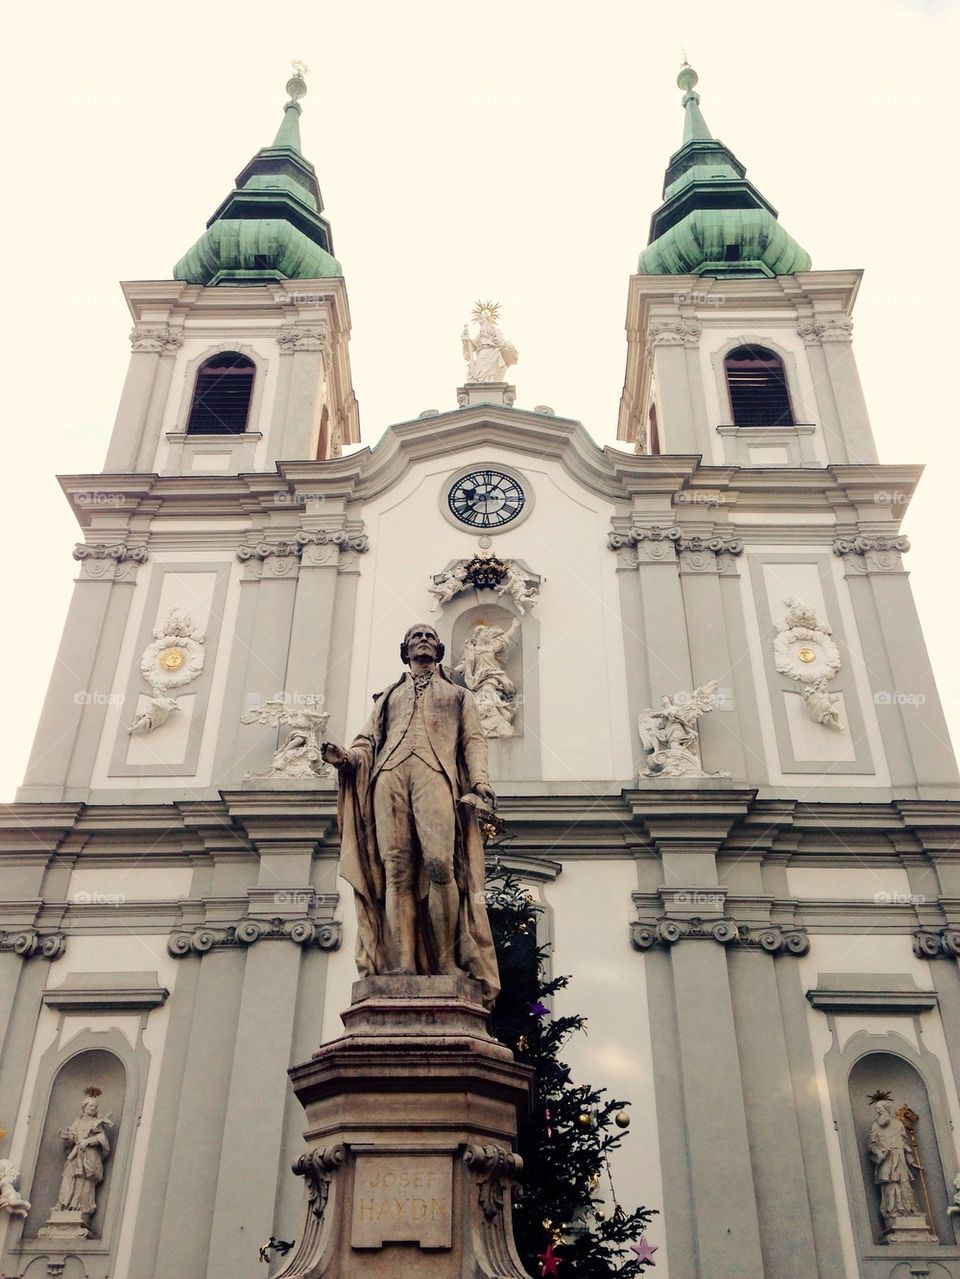 historical church in vienna